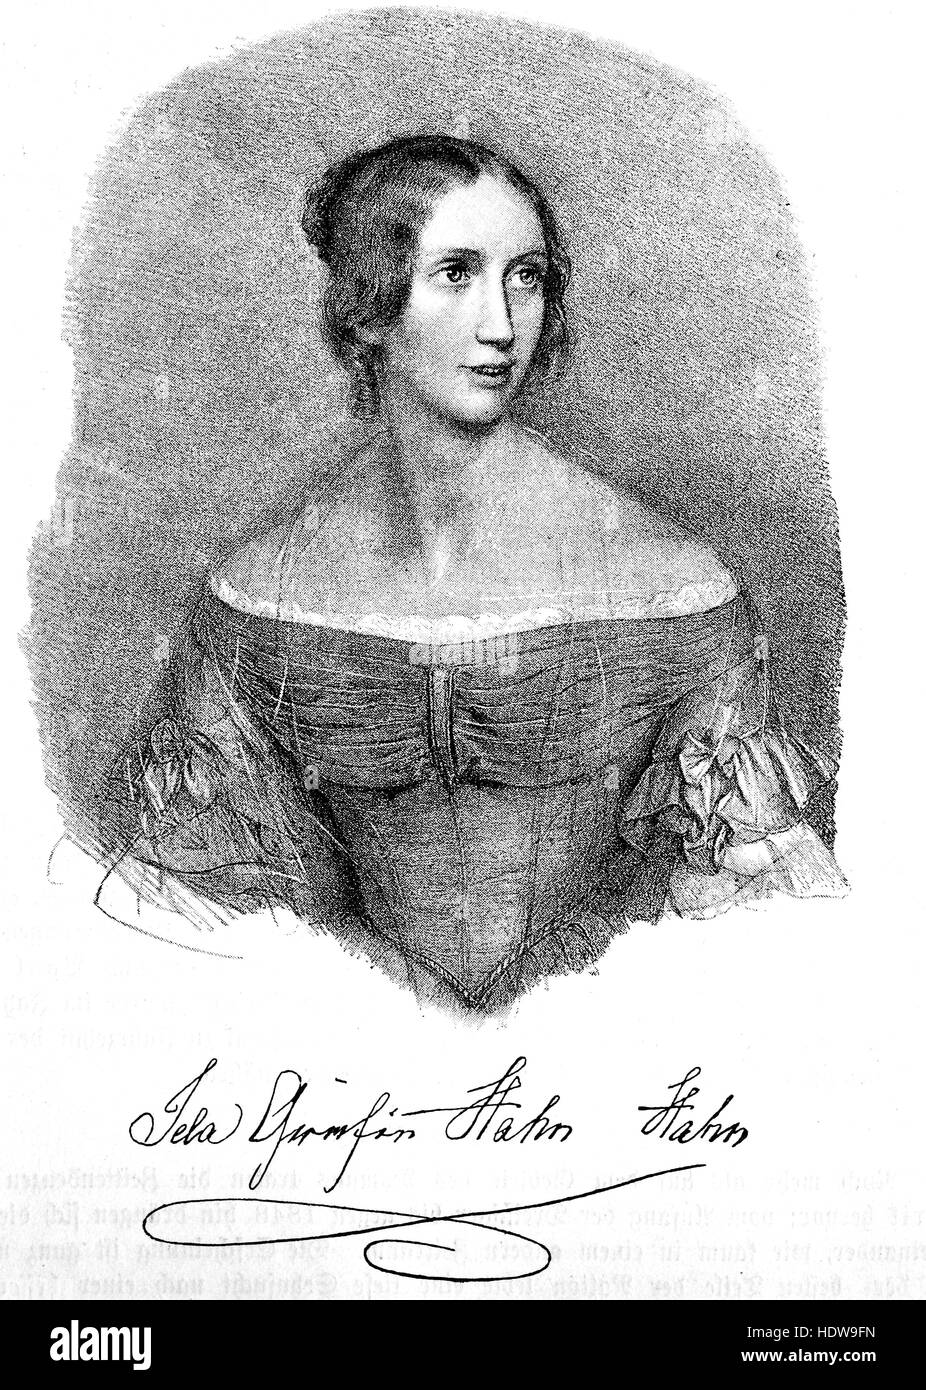 Ida Ida réellement Hahn-Hahn, Marie Louise Sophie Friederike Gustave comtesse von Hahn, 1805-1880, un écrivain allemand, parolier et fondateur du monastère, gravure sur bois de l'année 1880 Banque D'Images